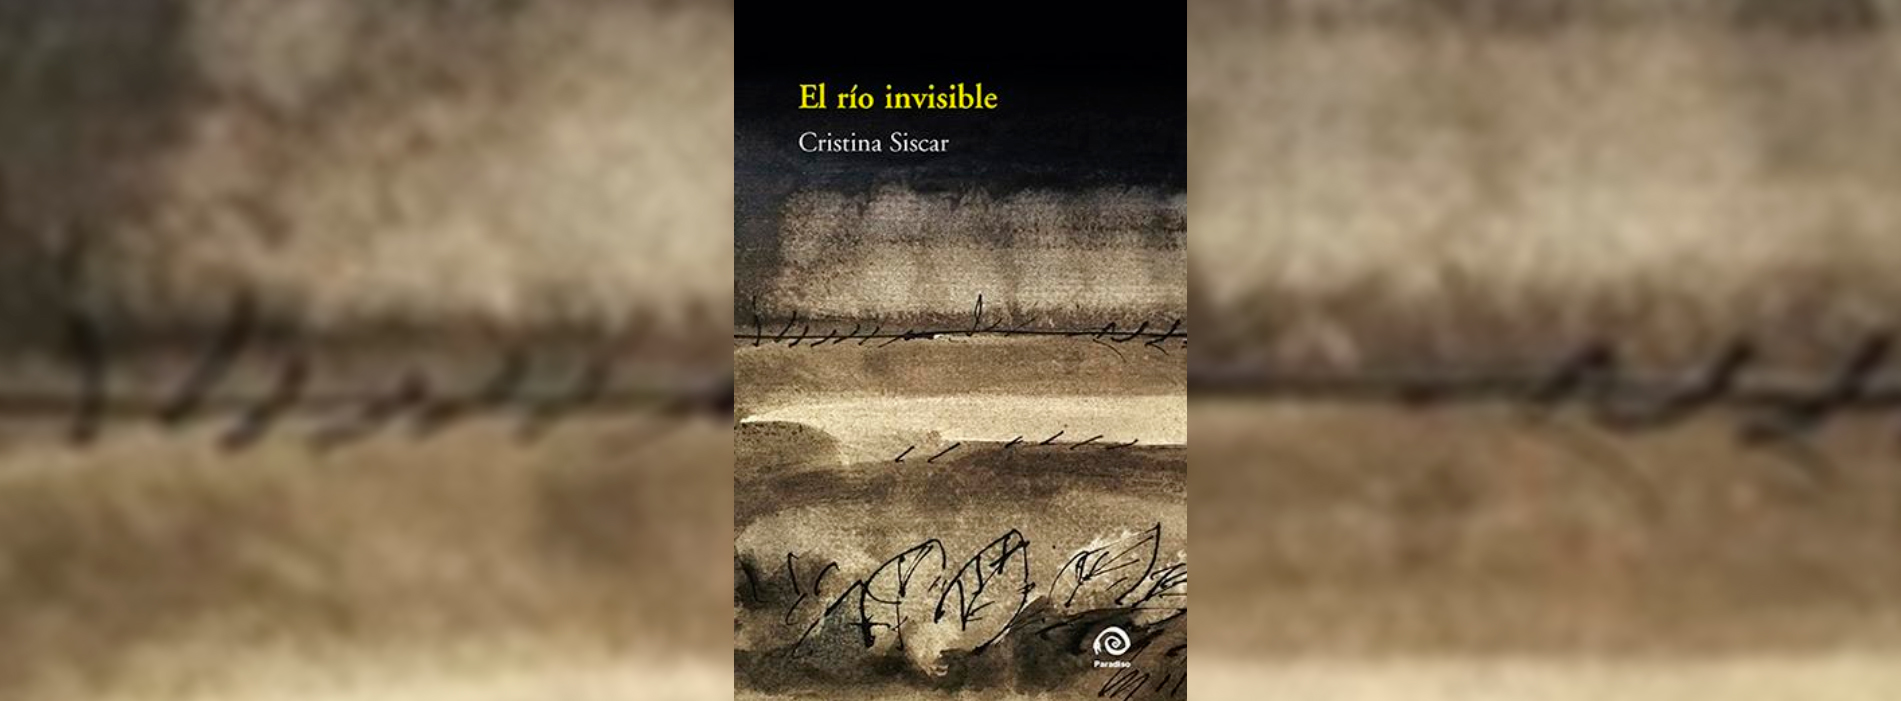 Reseña a Cristina Siscar: “El río de la memoria”